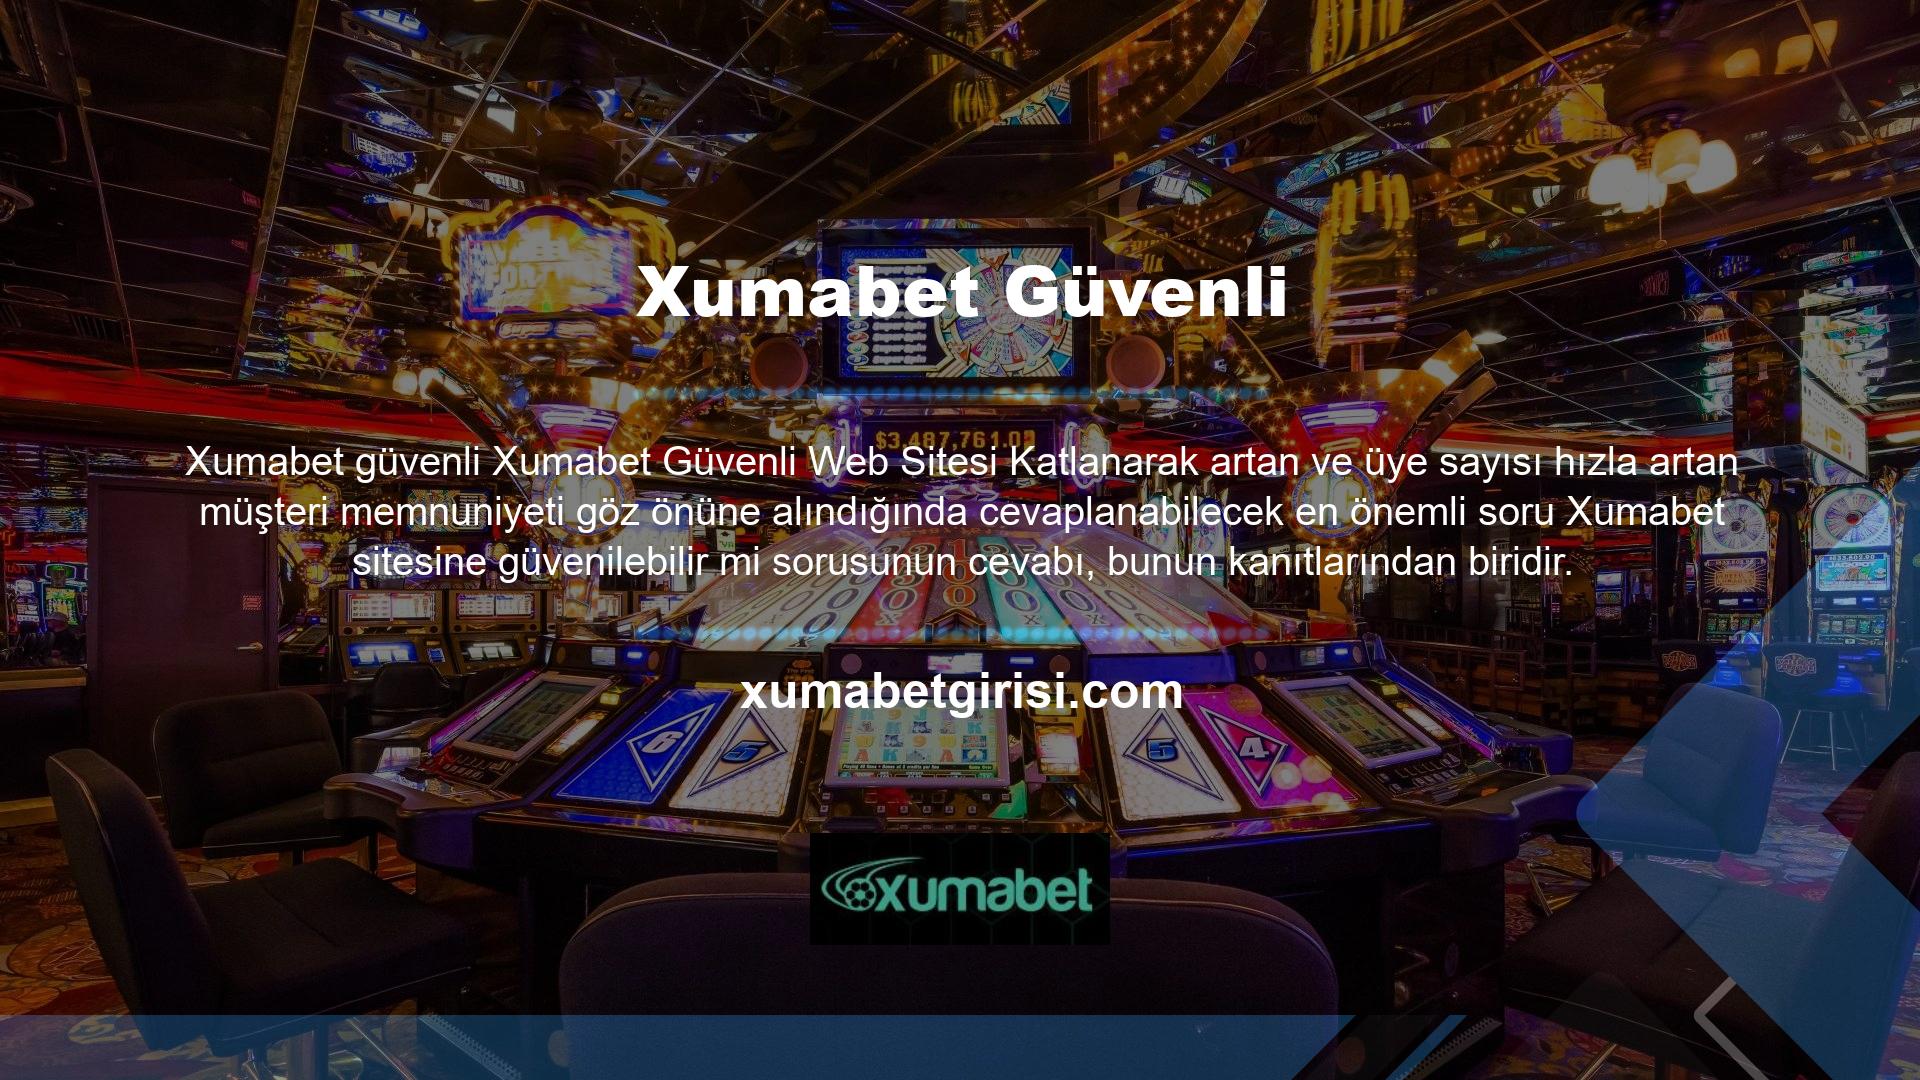 Xumabet çok güvenilir olduğu kanıtlanmıştır ve Xumabet web sitesine ön ödemeli bankalar ve en popüler kart sistemleri aracılığıyla da belge gönderebilirsiniz